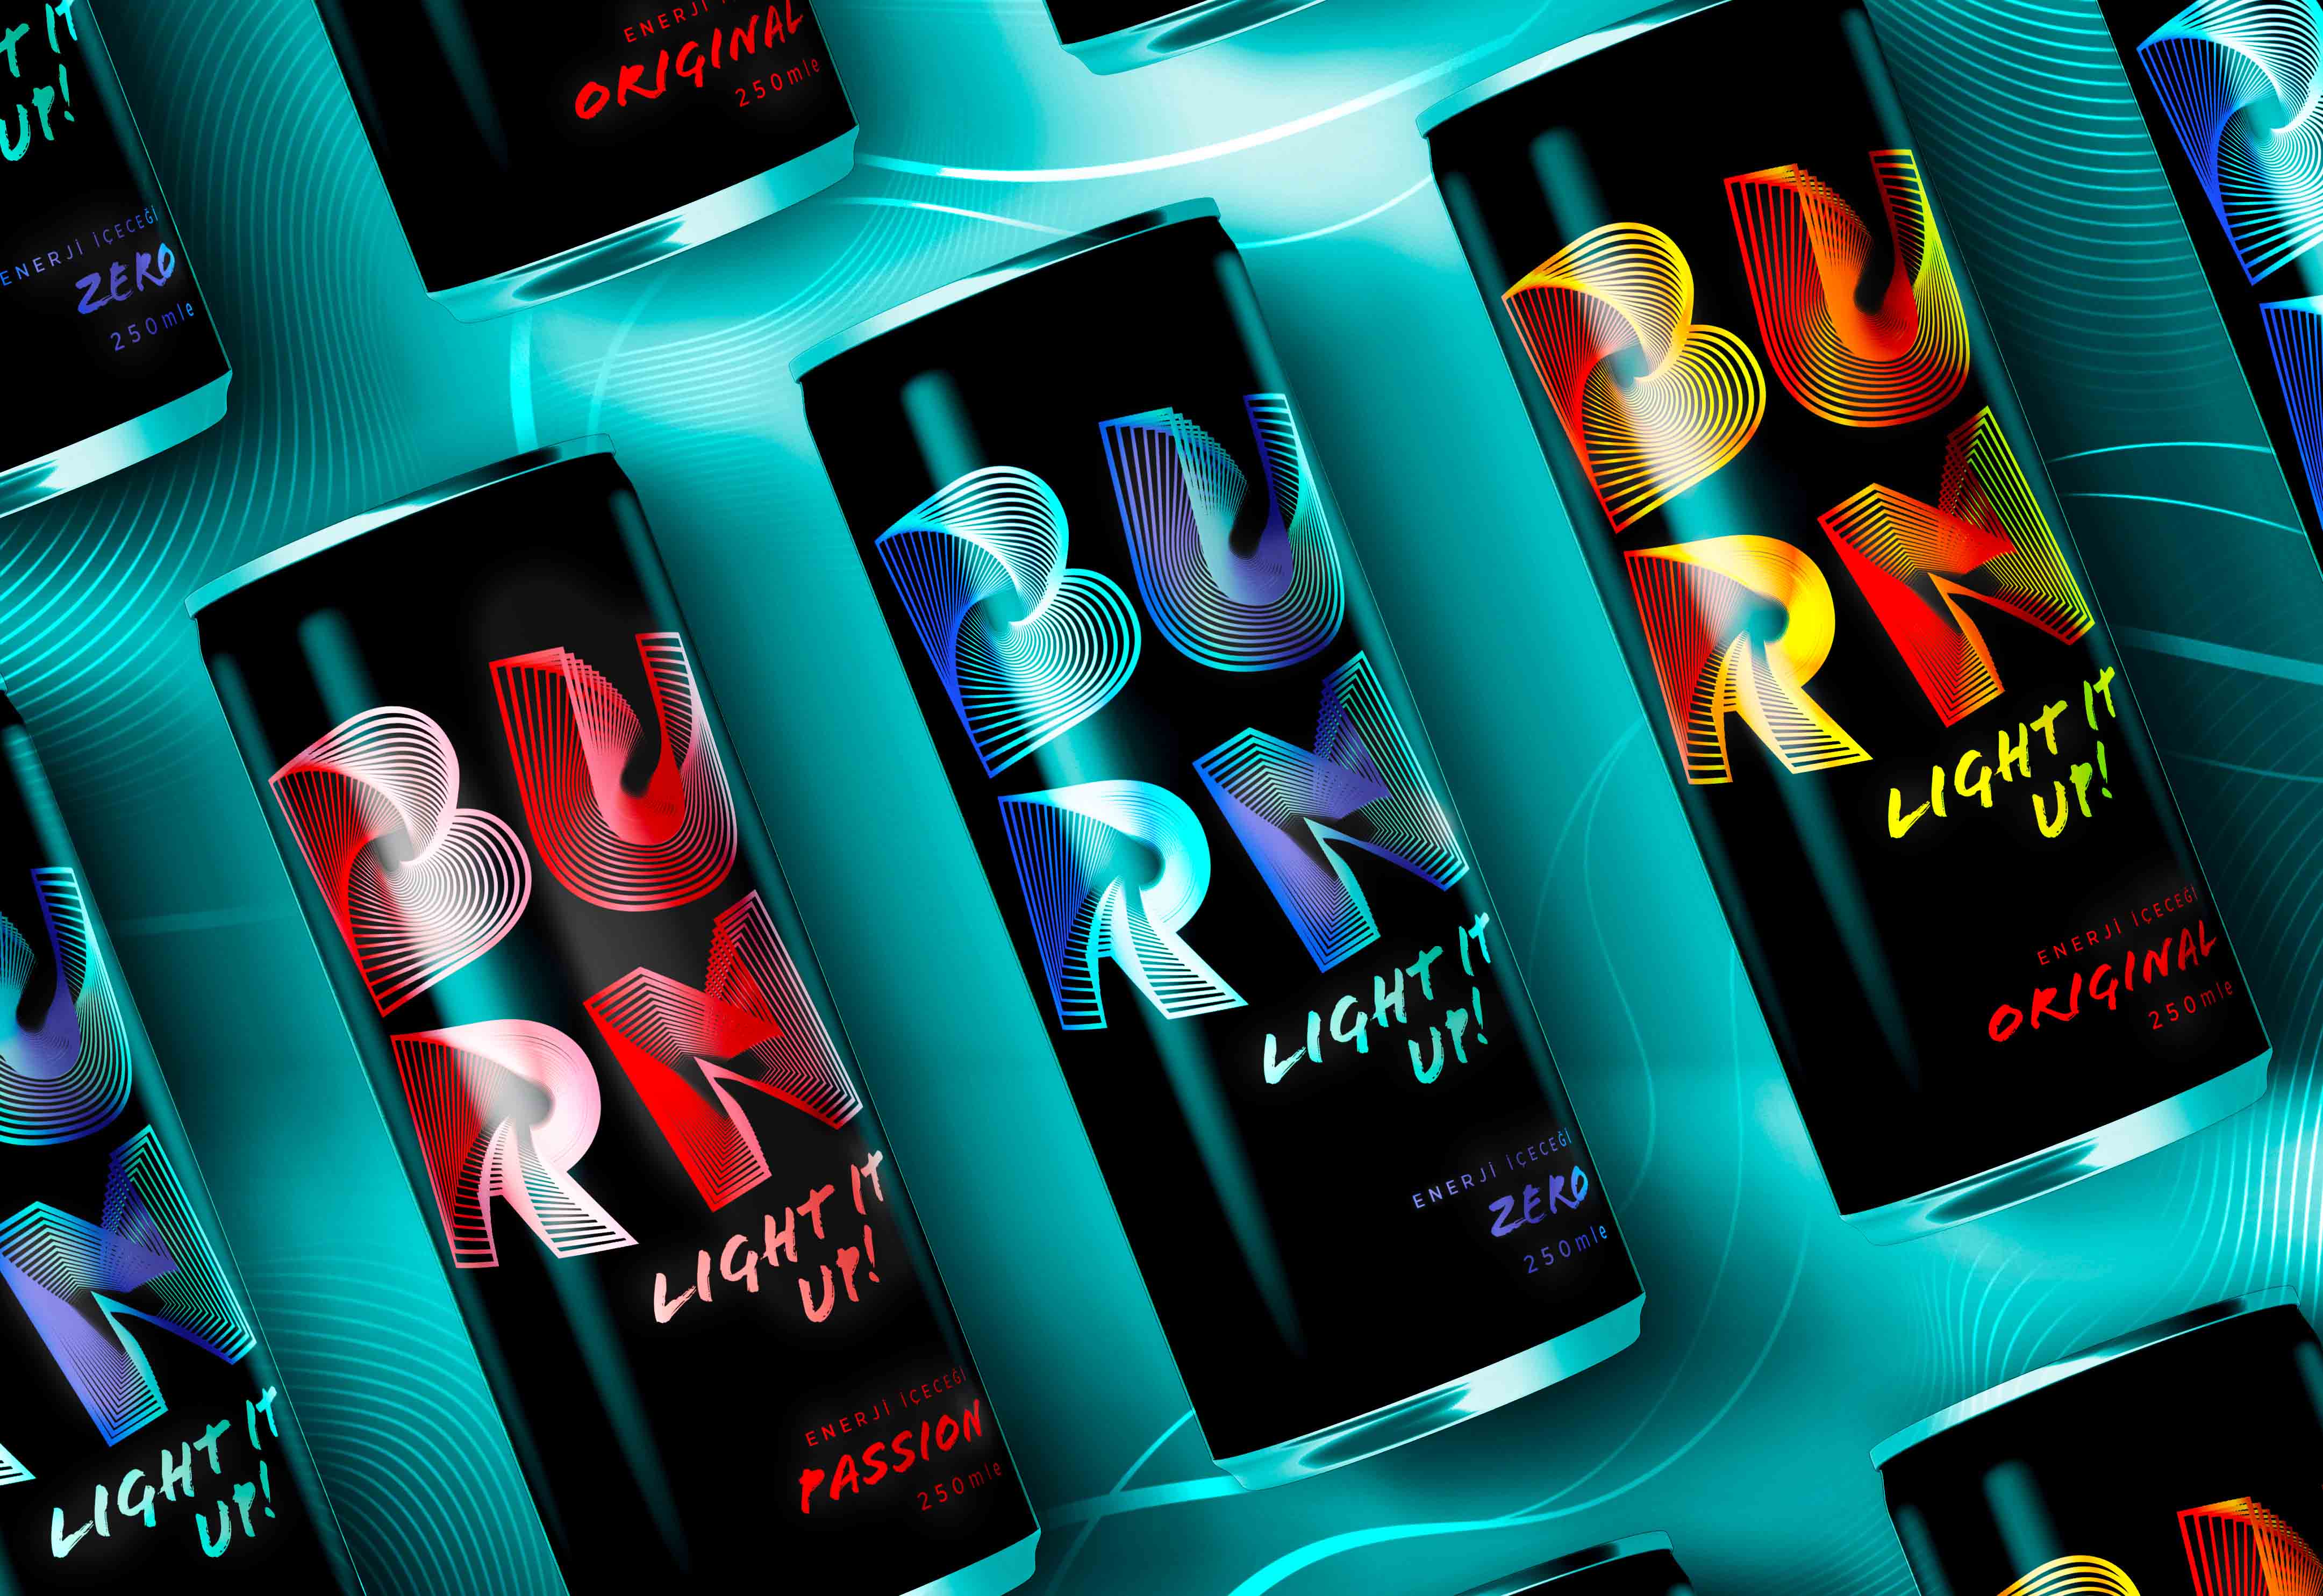 Burn Energy Drinks Rebranding